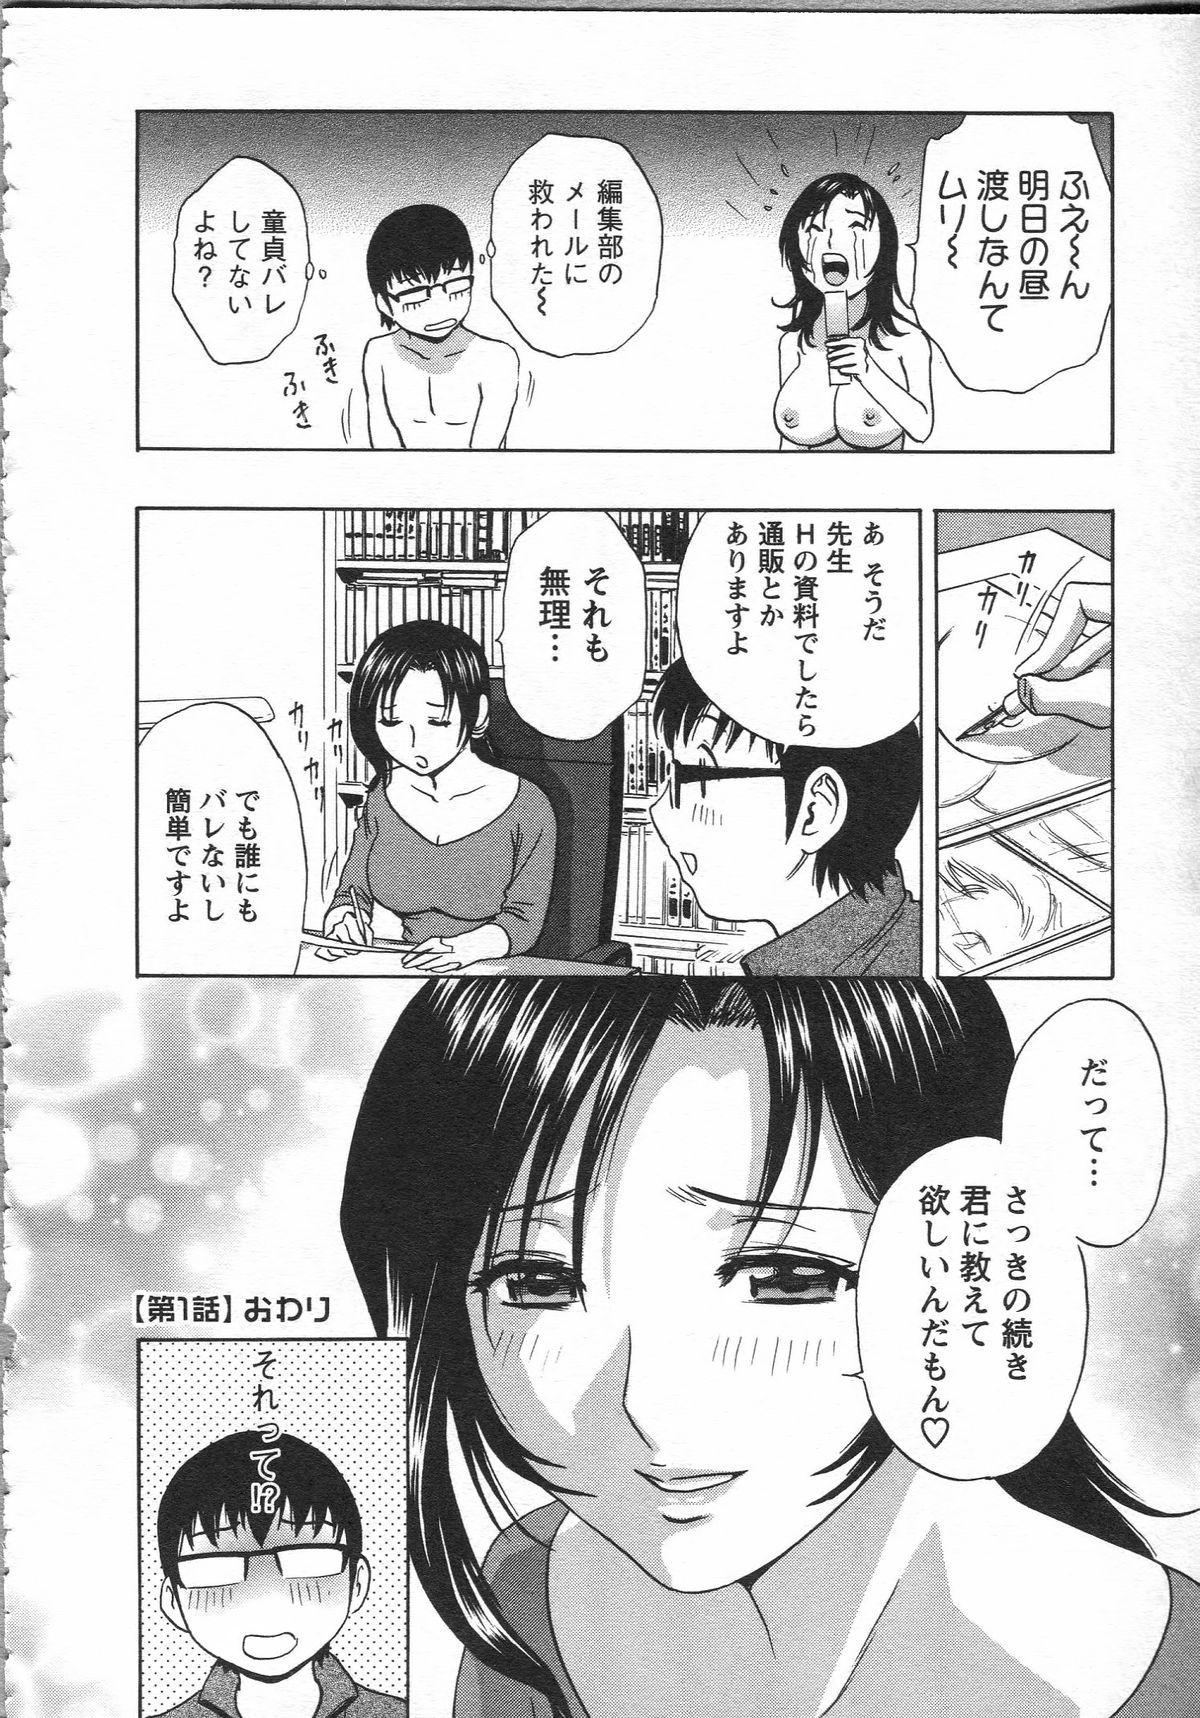 Manga no youna Hitozuma to no Hibi - Days with Married Women such as Comics. 24